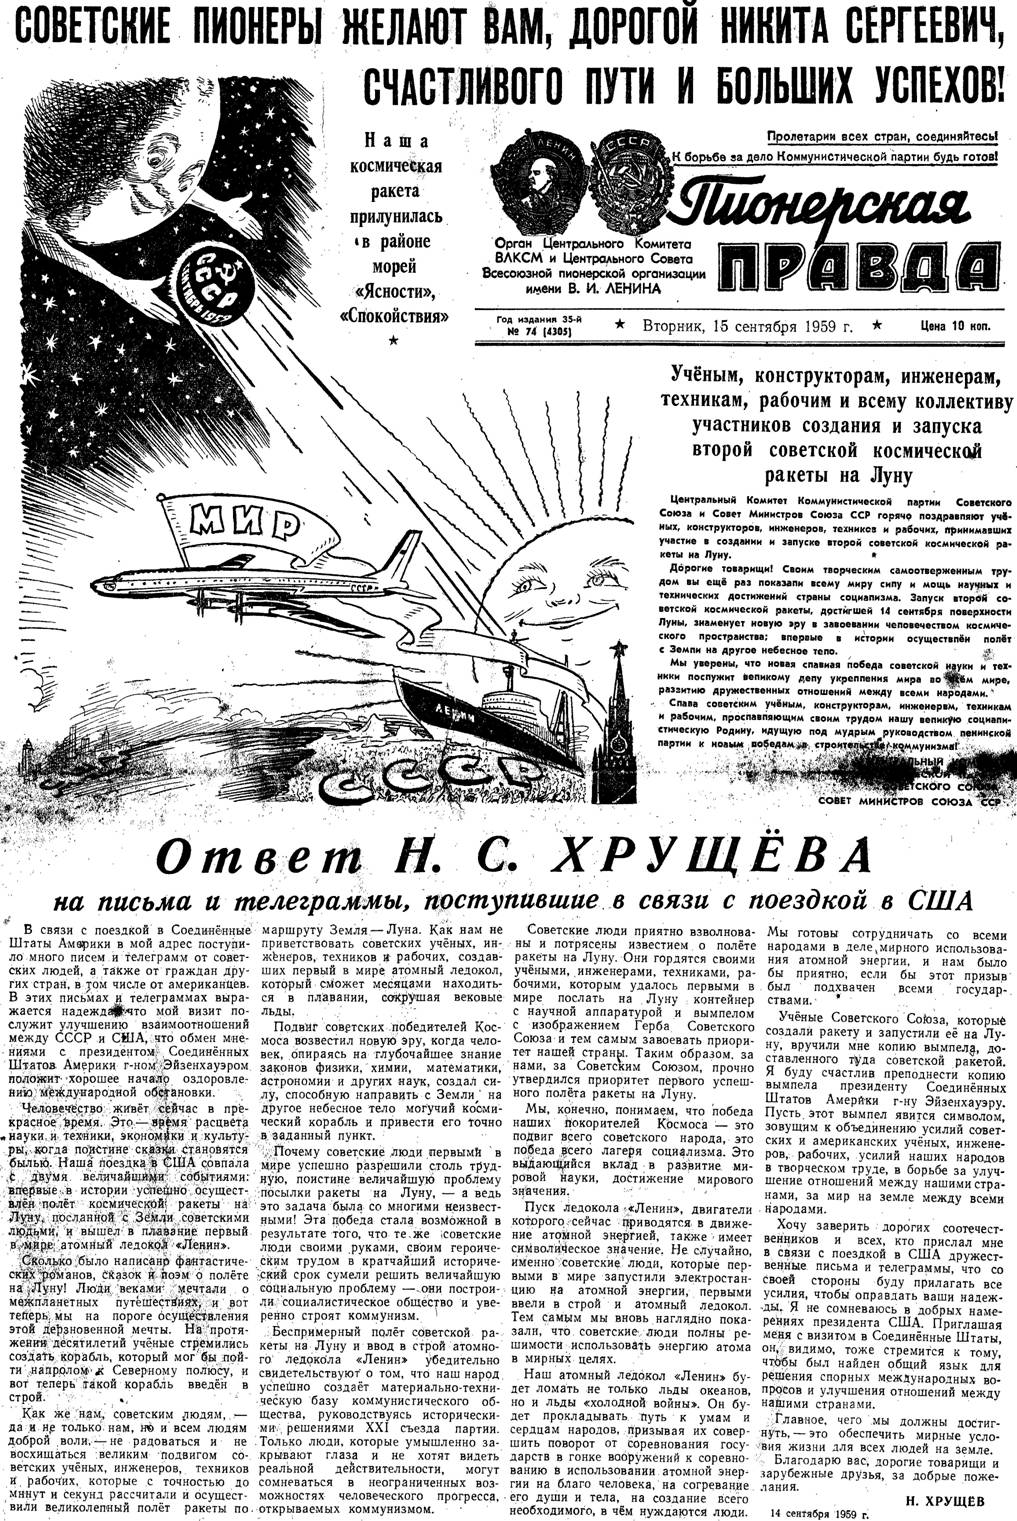 Titelblatt der Kinderzeitung "Pionerskaja Pravda"